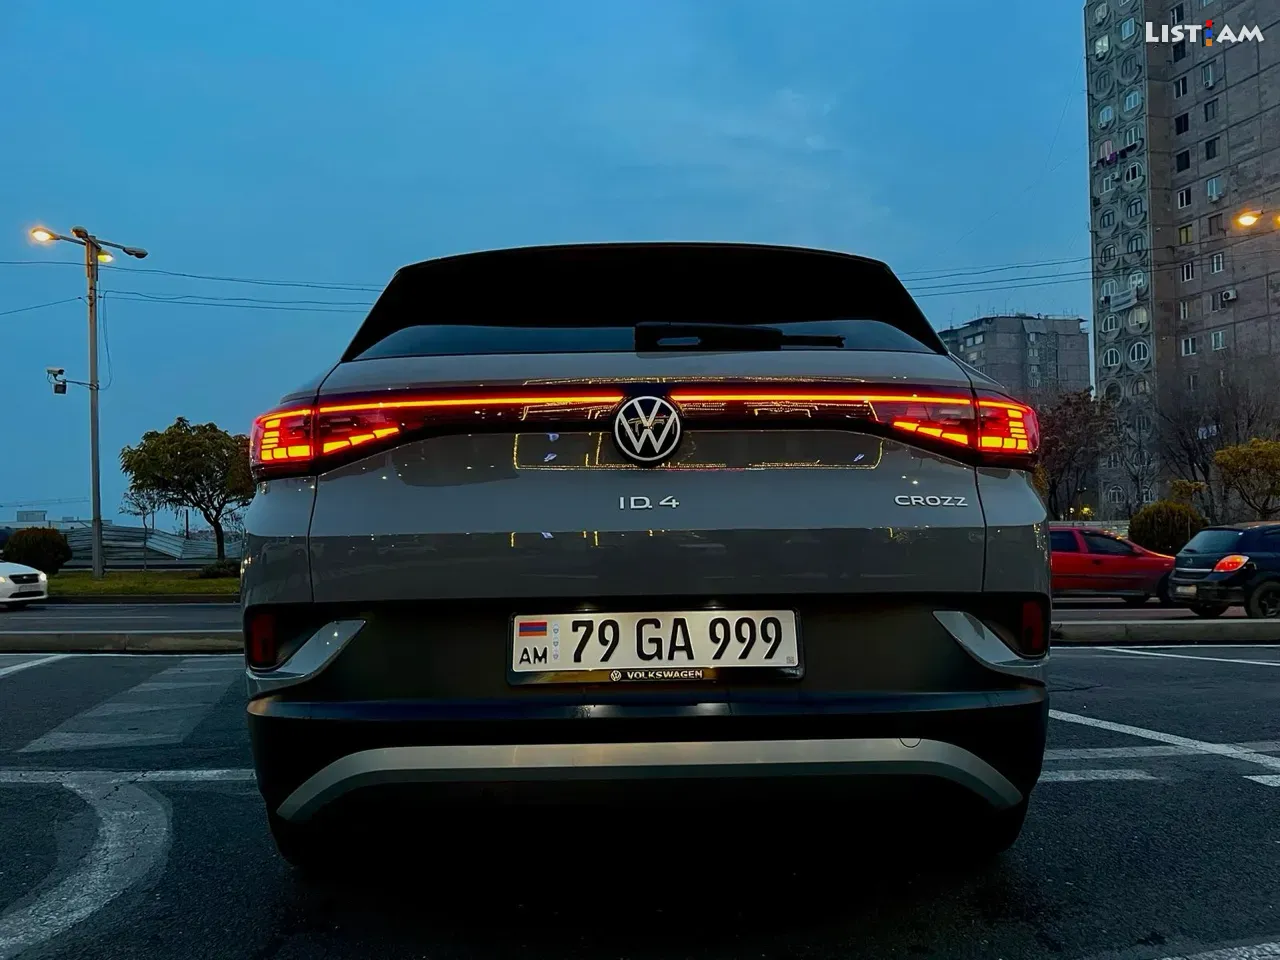 Volkswagen ID.4, էլեկտրական, 2022 թ. - Ավտոմեքենաներ - List.am